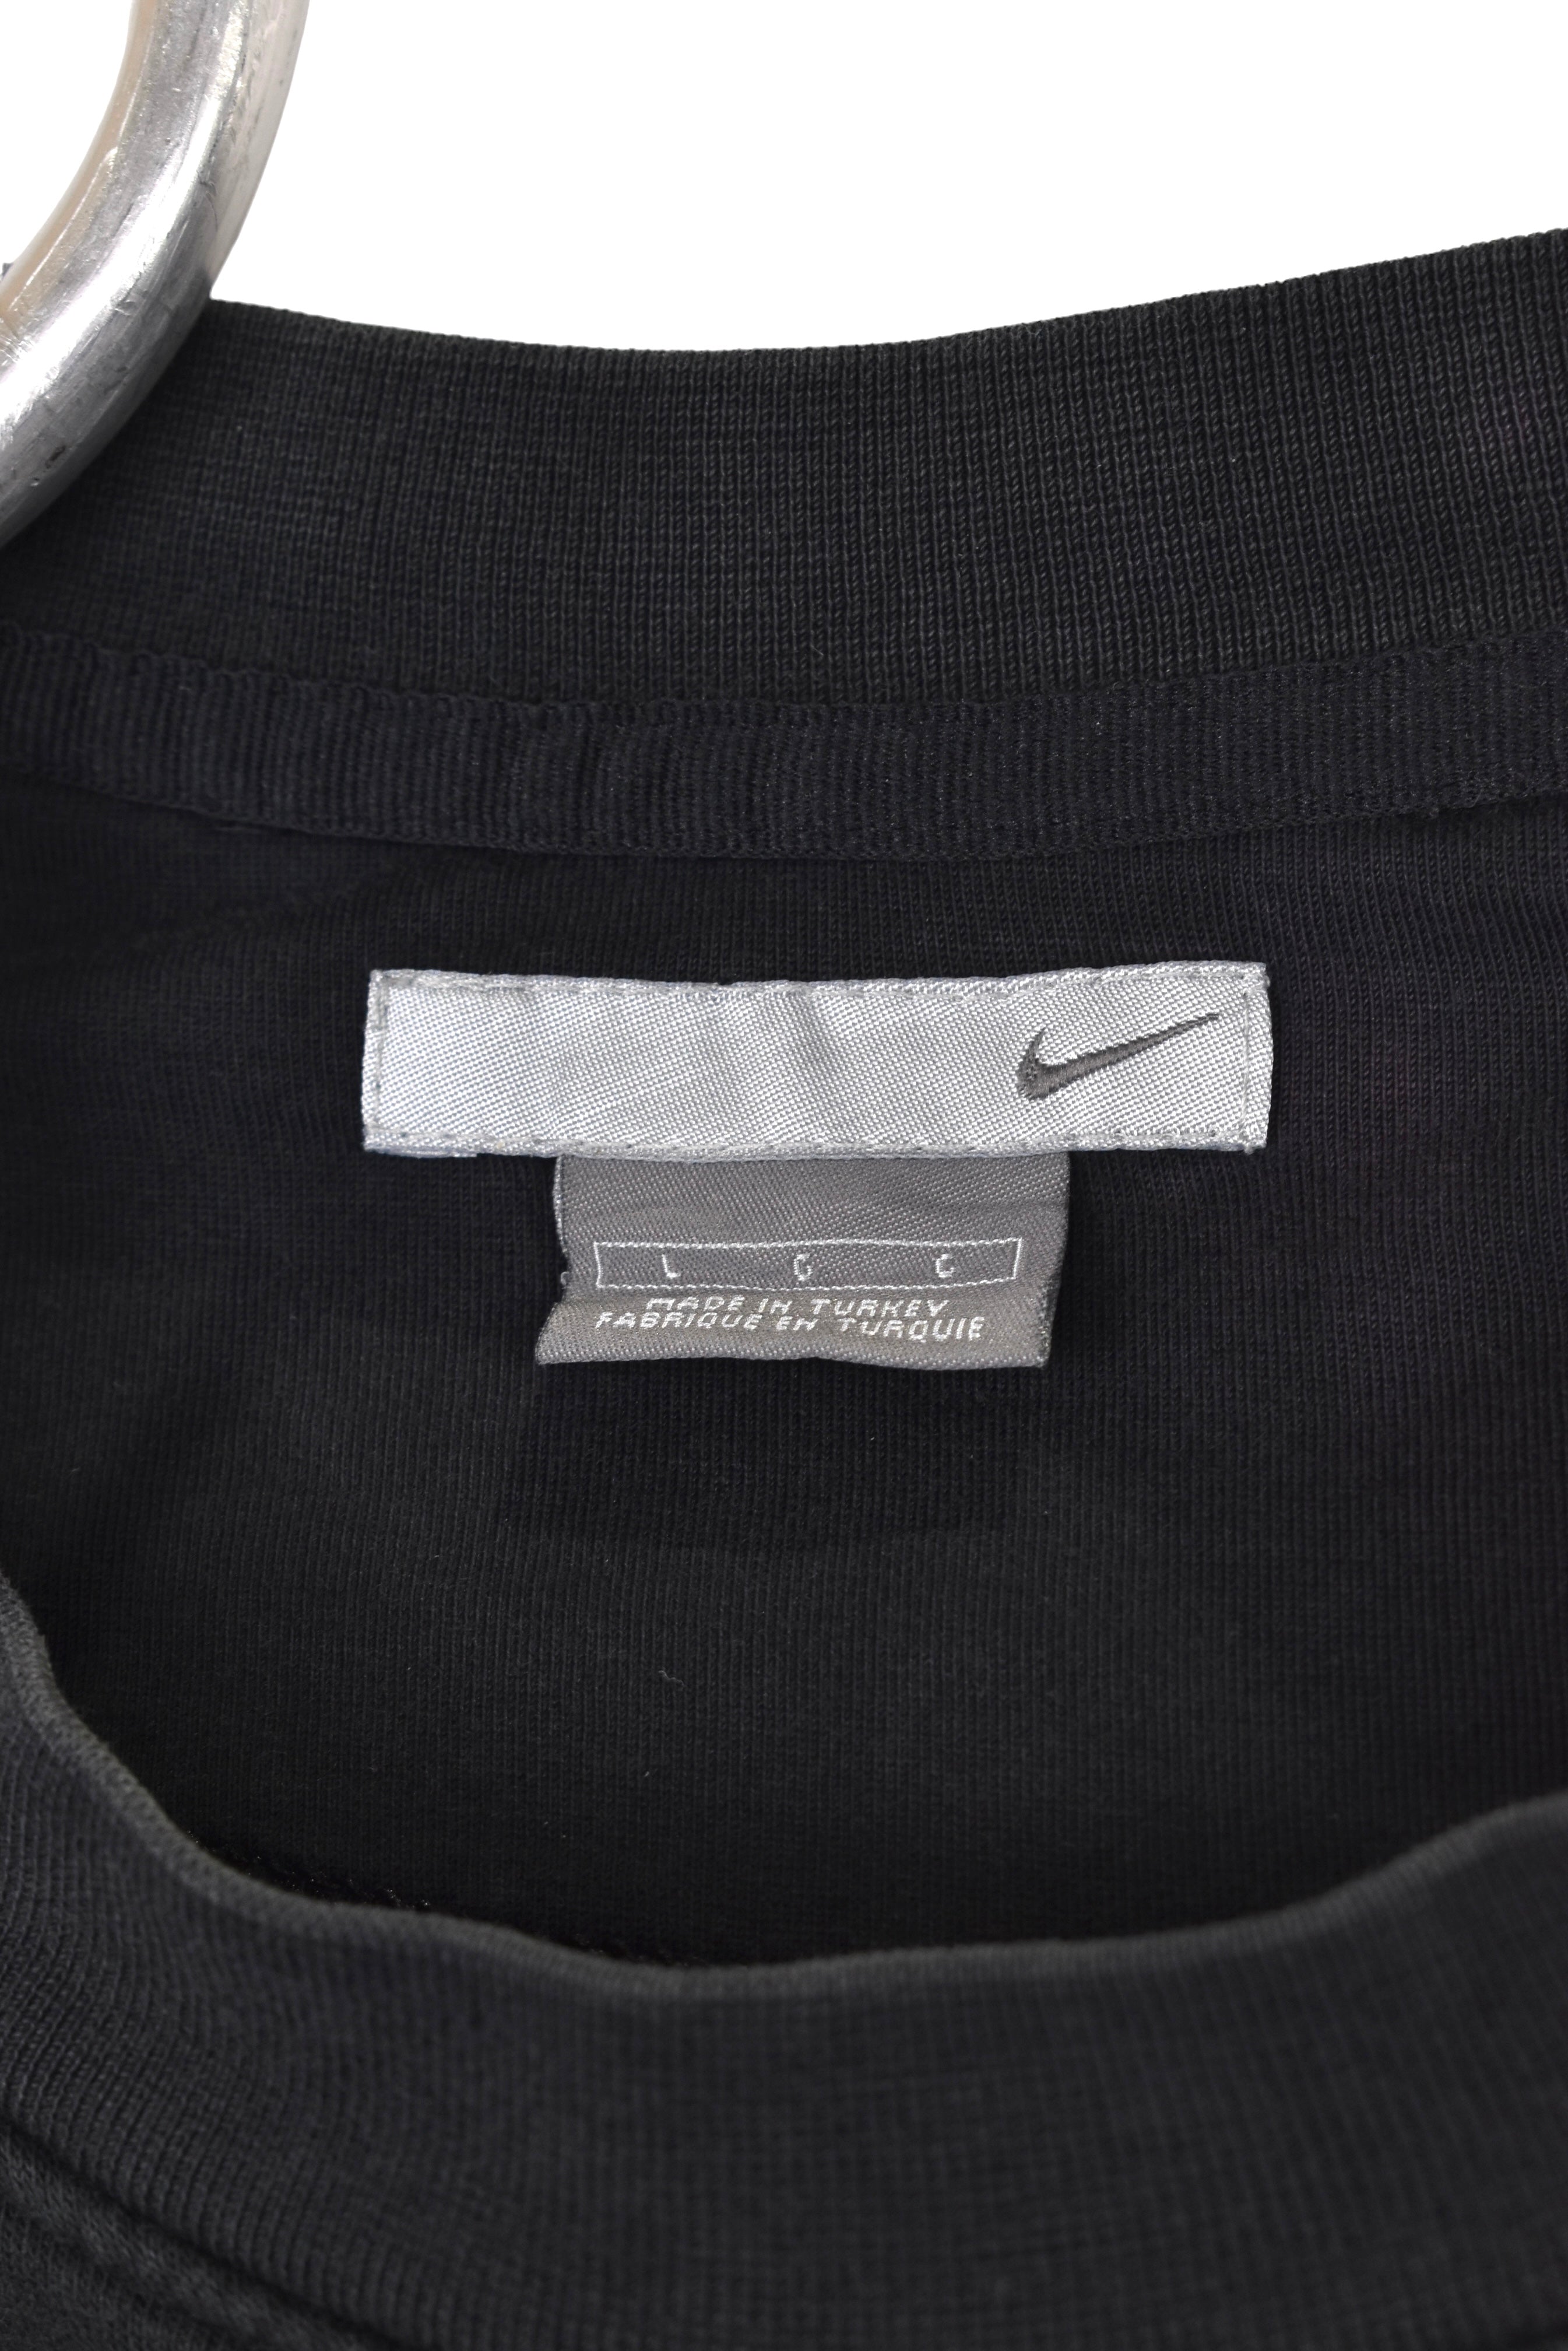 Vintage Nike sweatshirt, black embroidered crewneck - Large